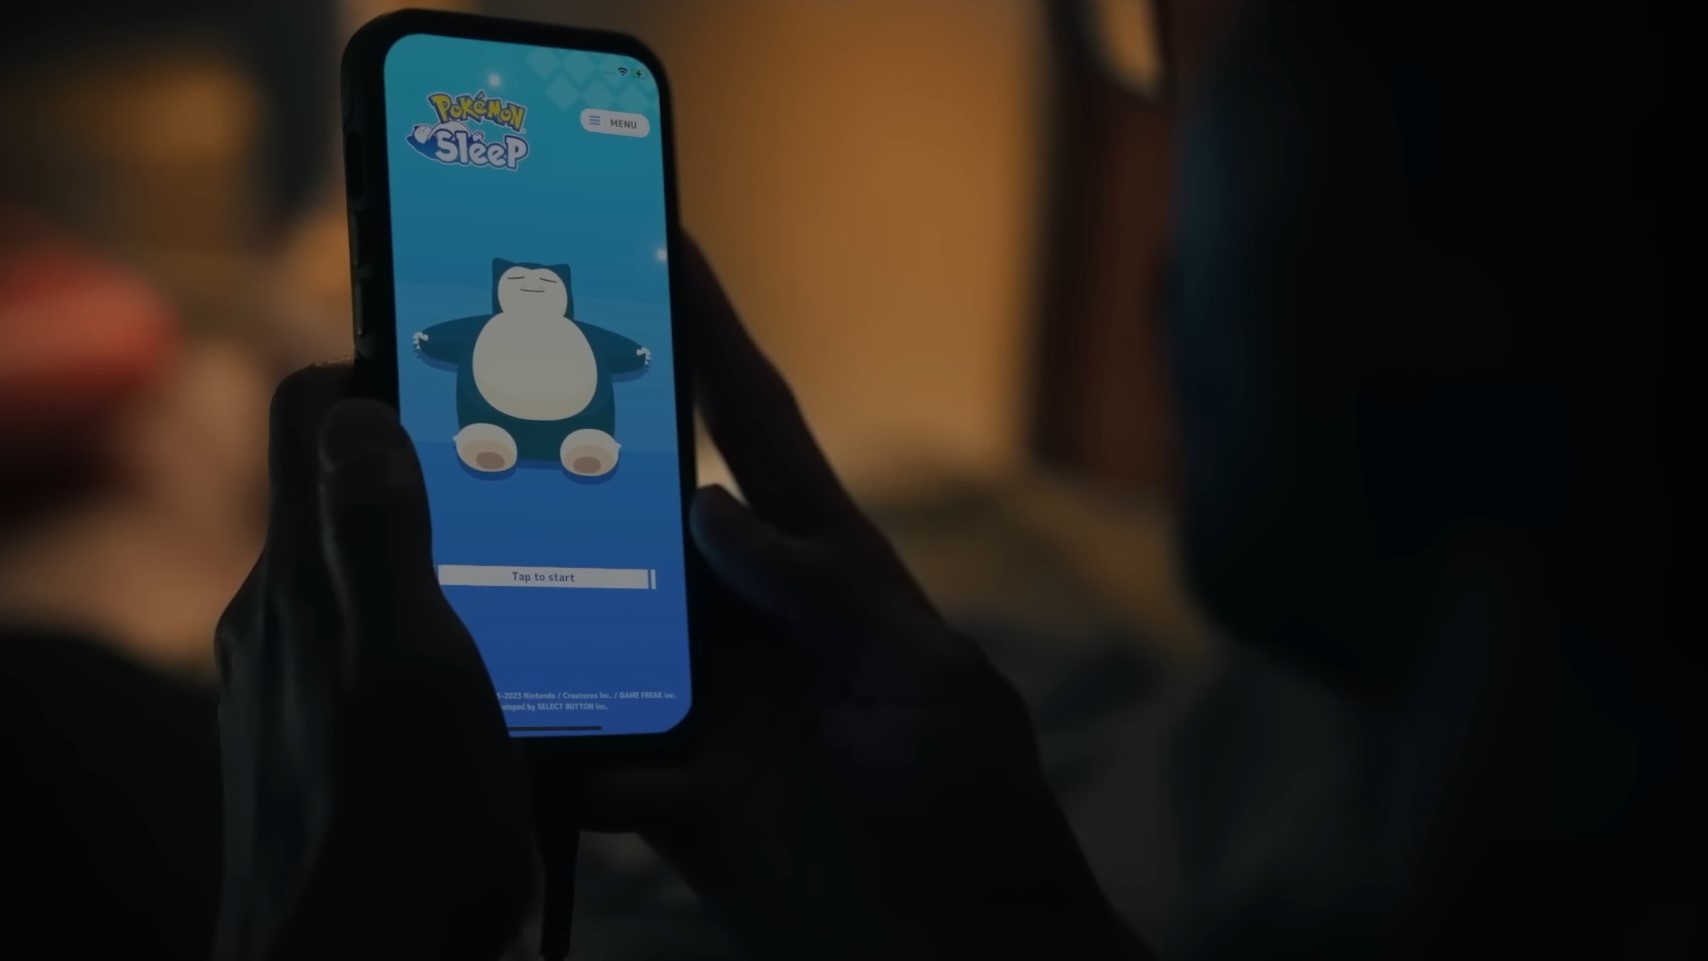 Pokémon Sleep em um smartphone no trailer.